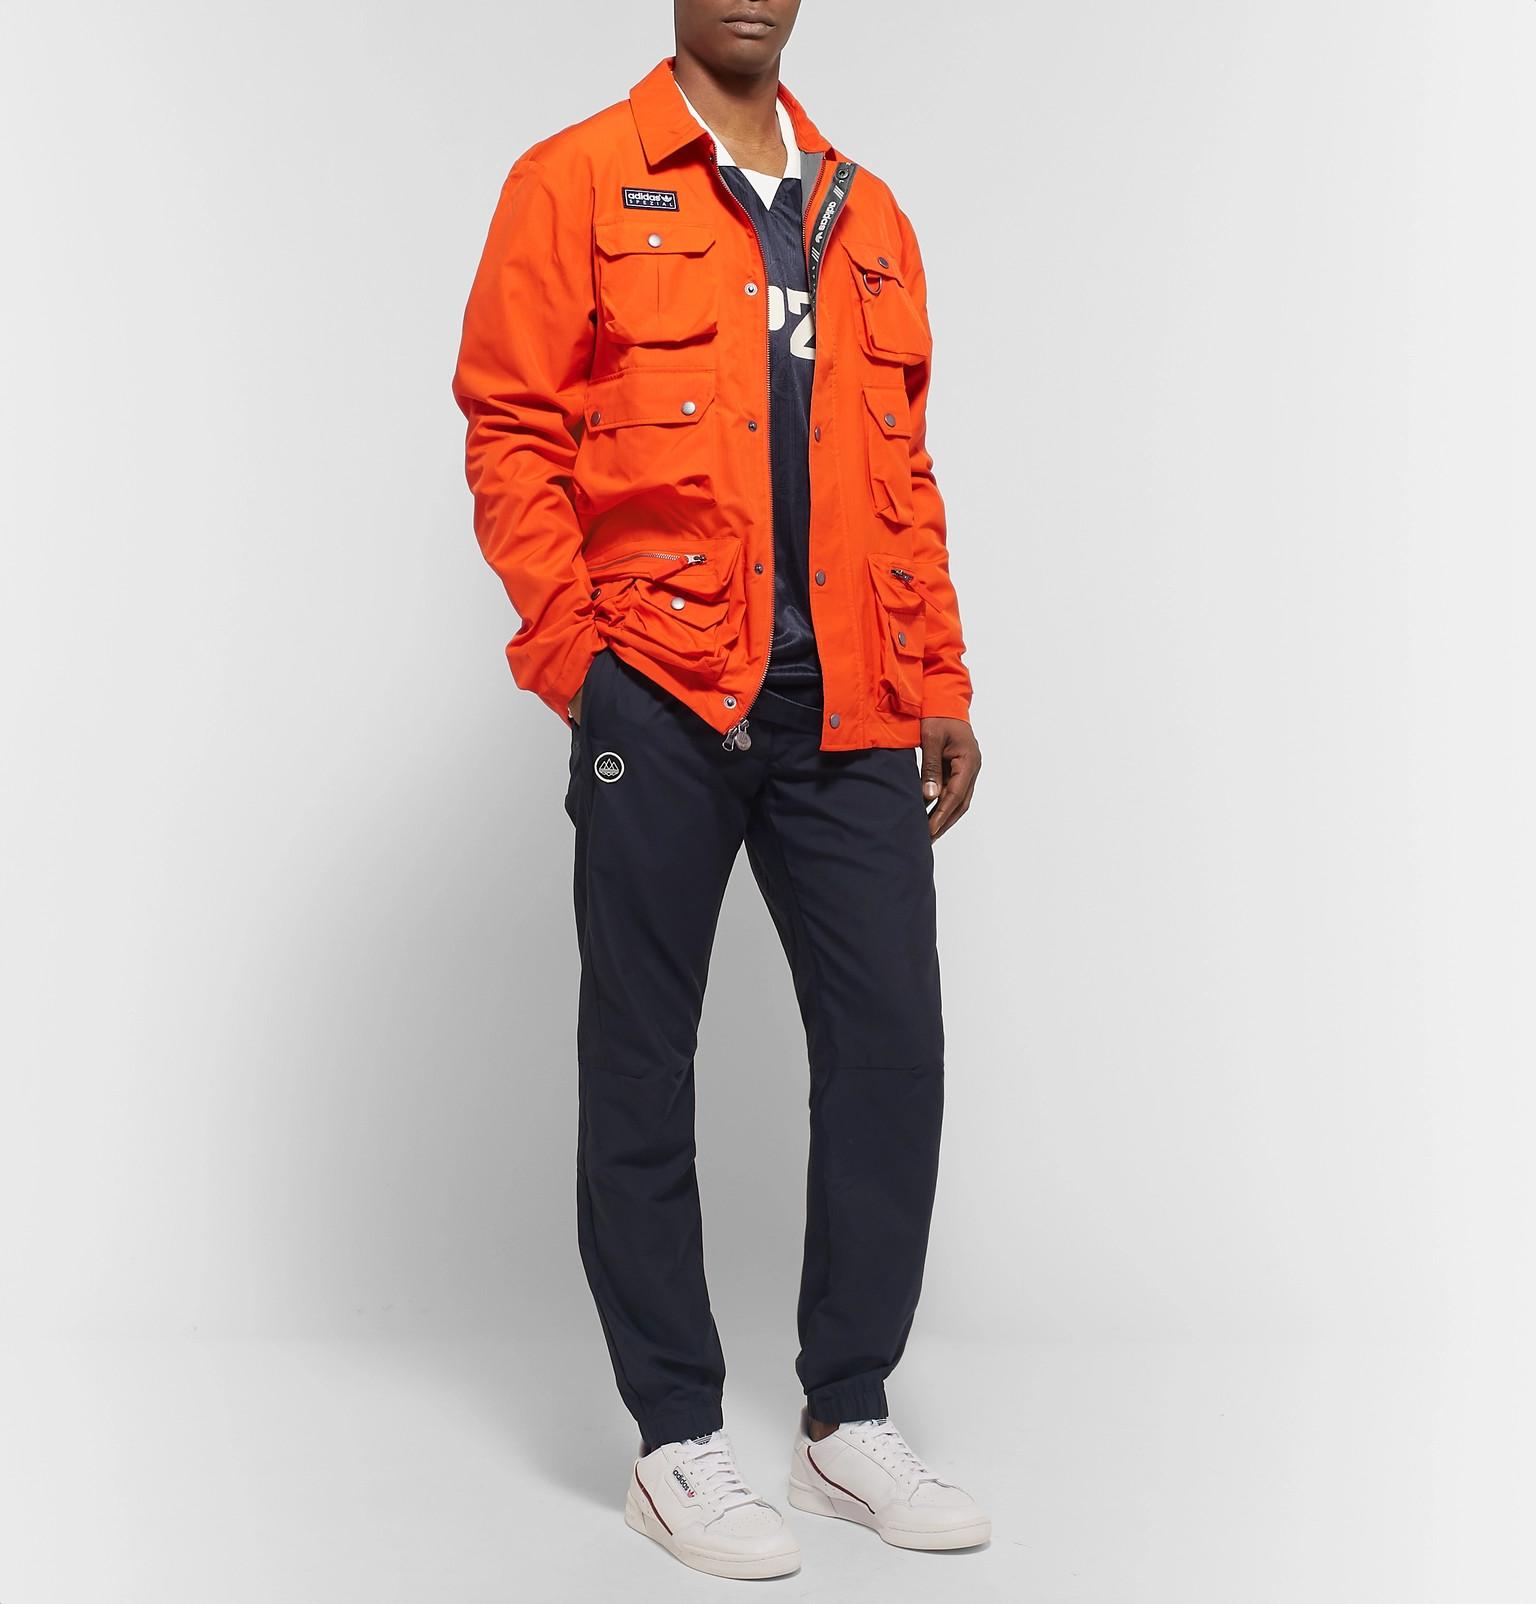 orange adidas spezial jacket